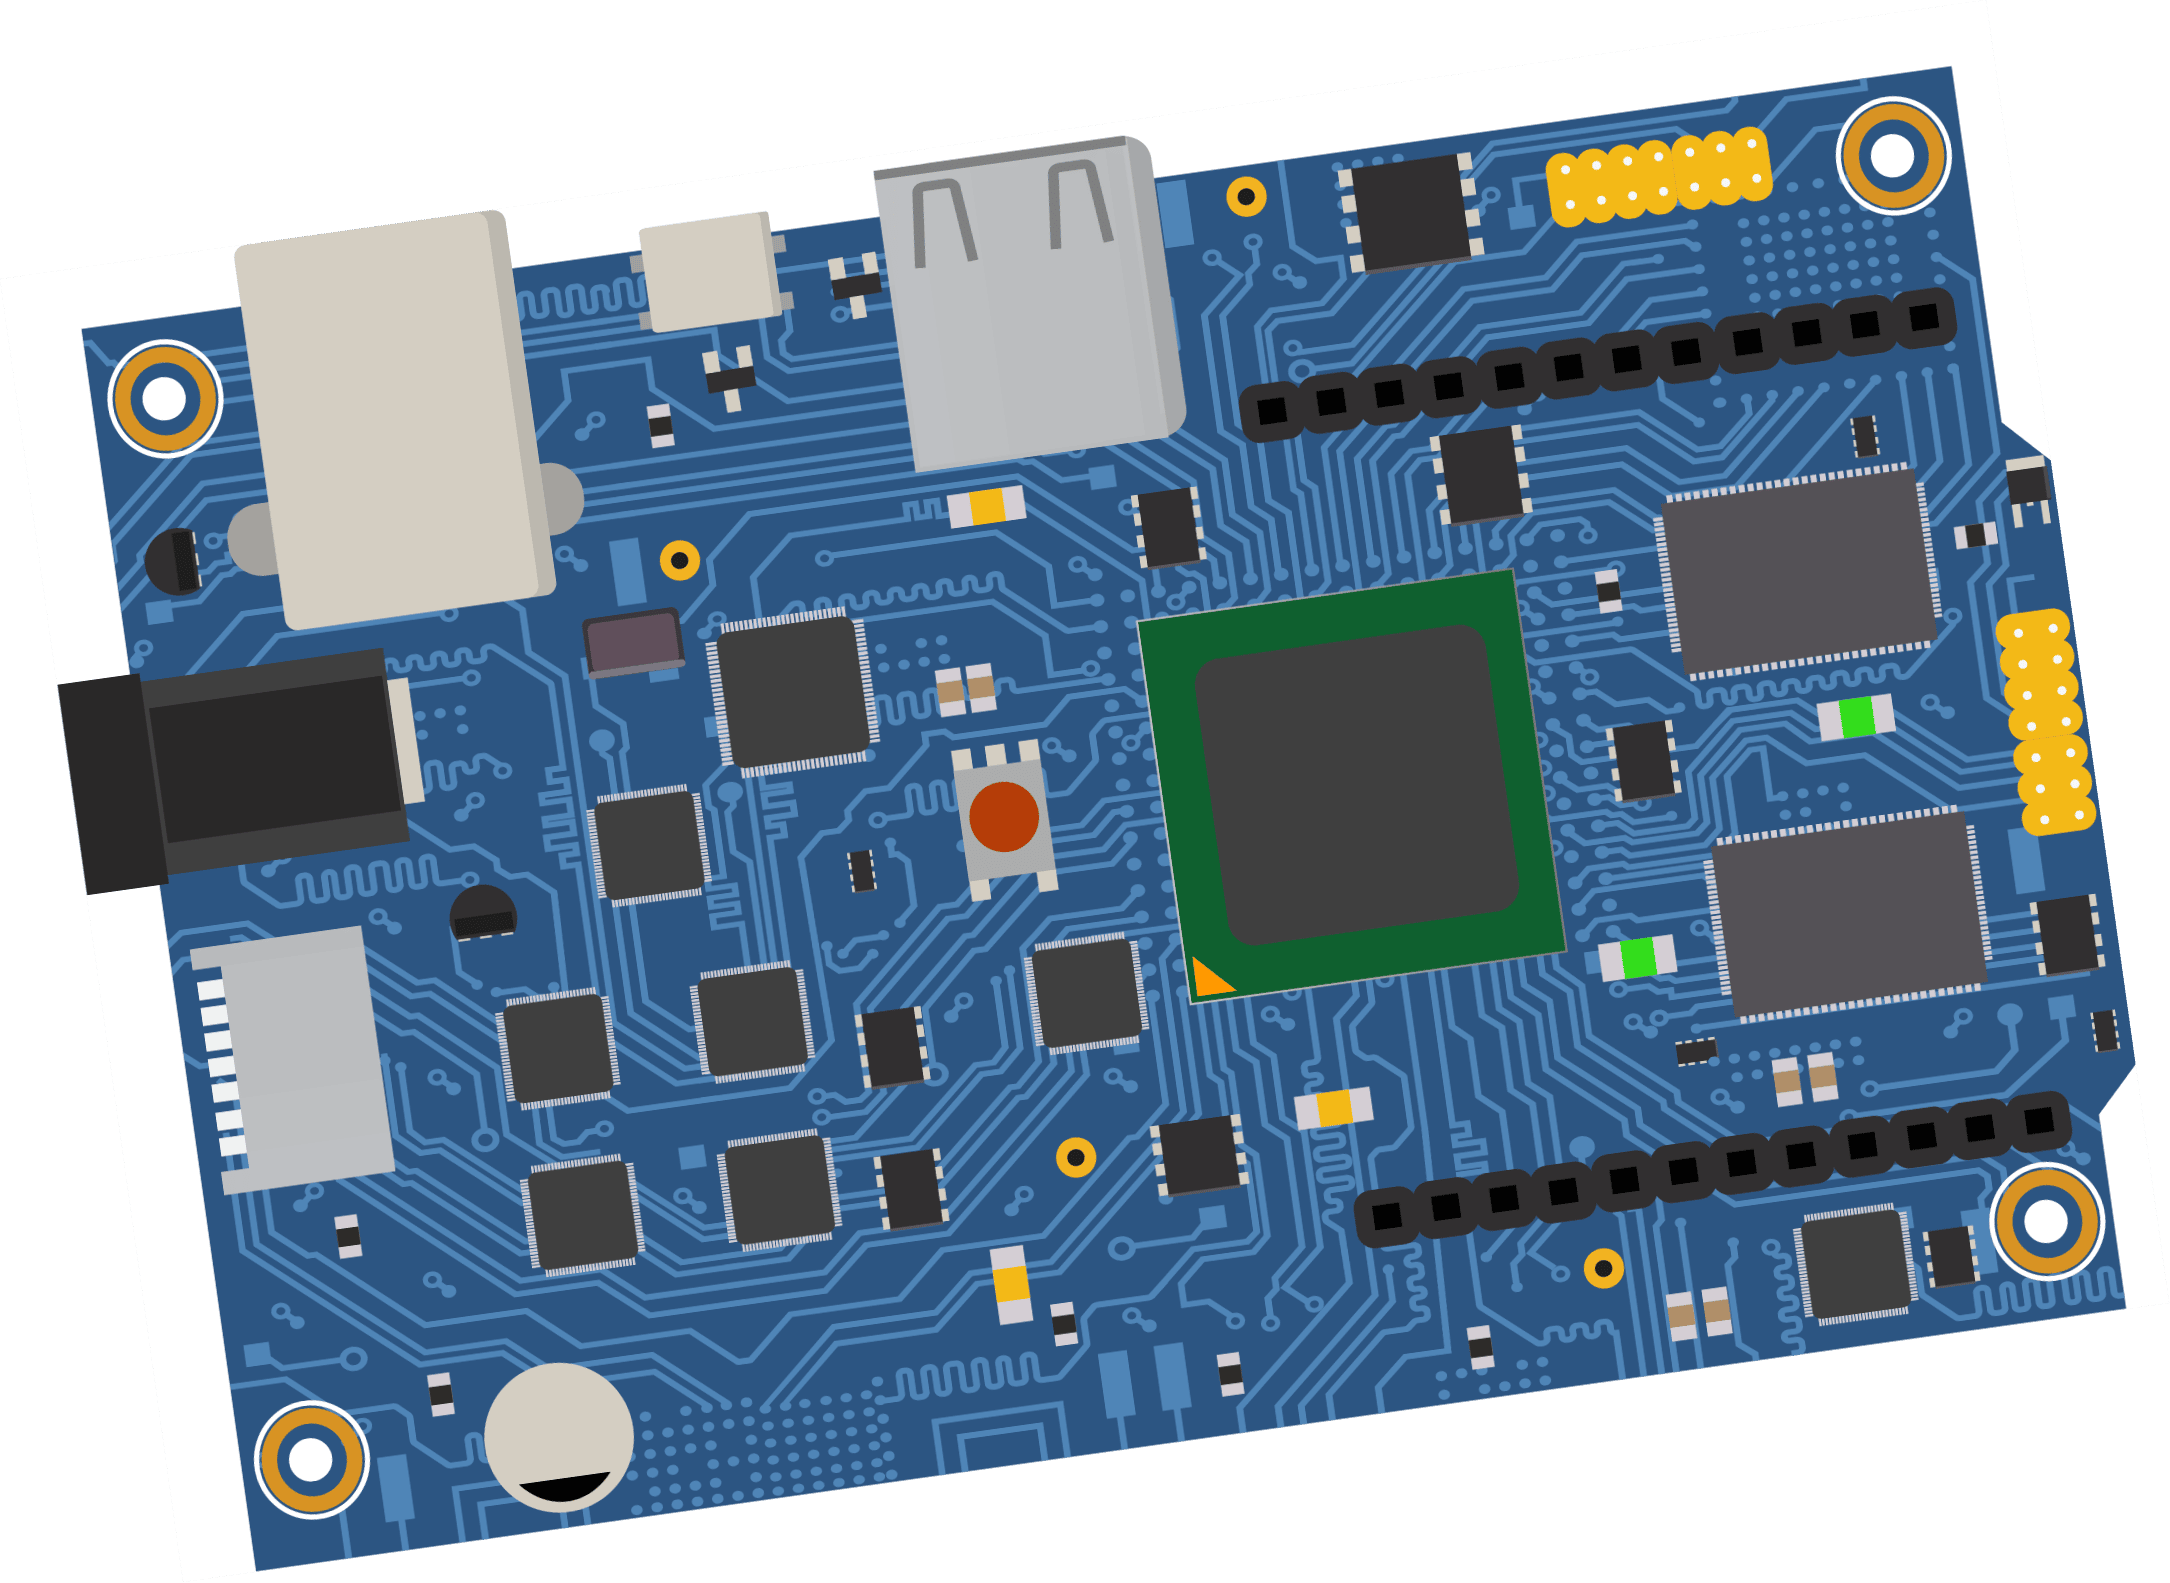 PCB hardware board